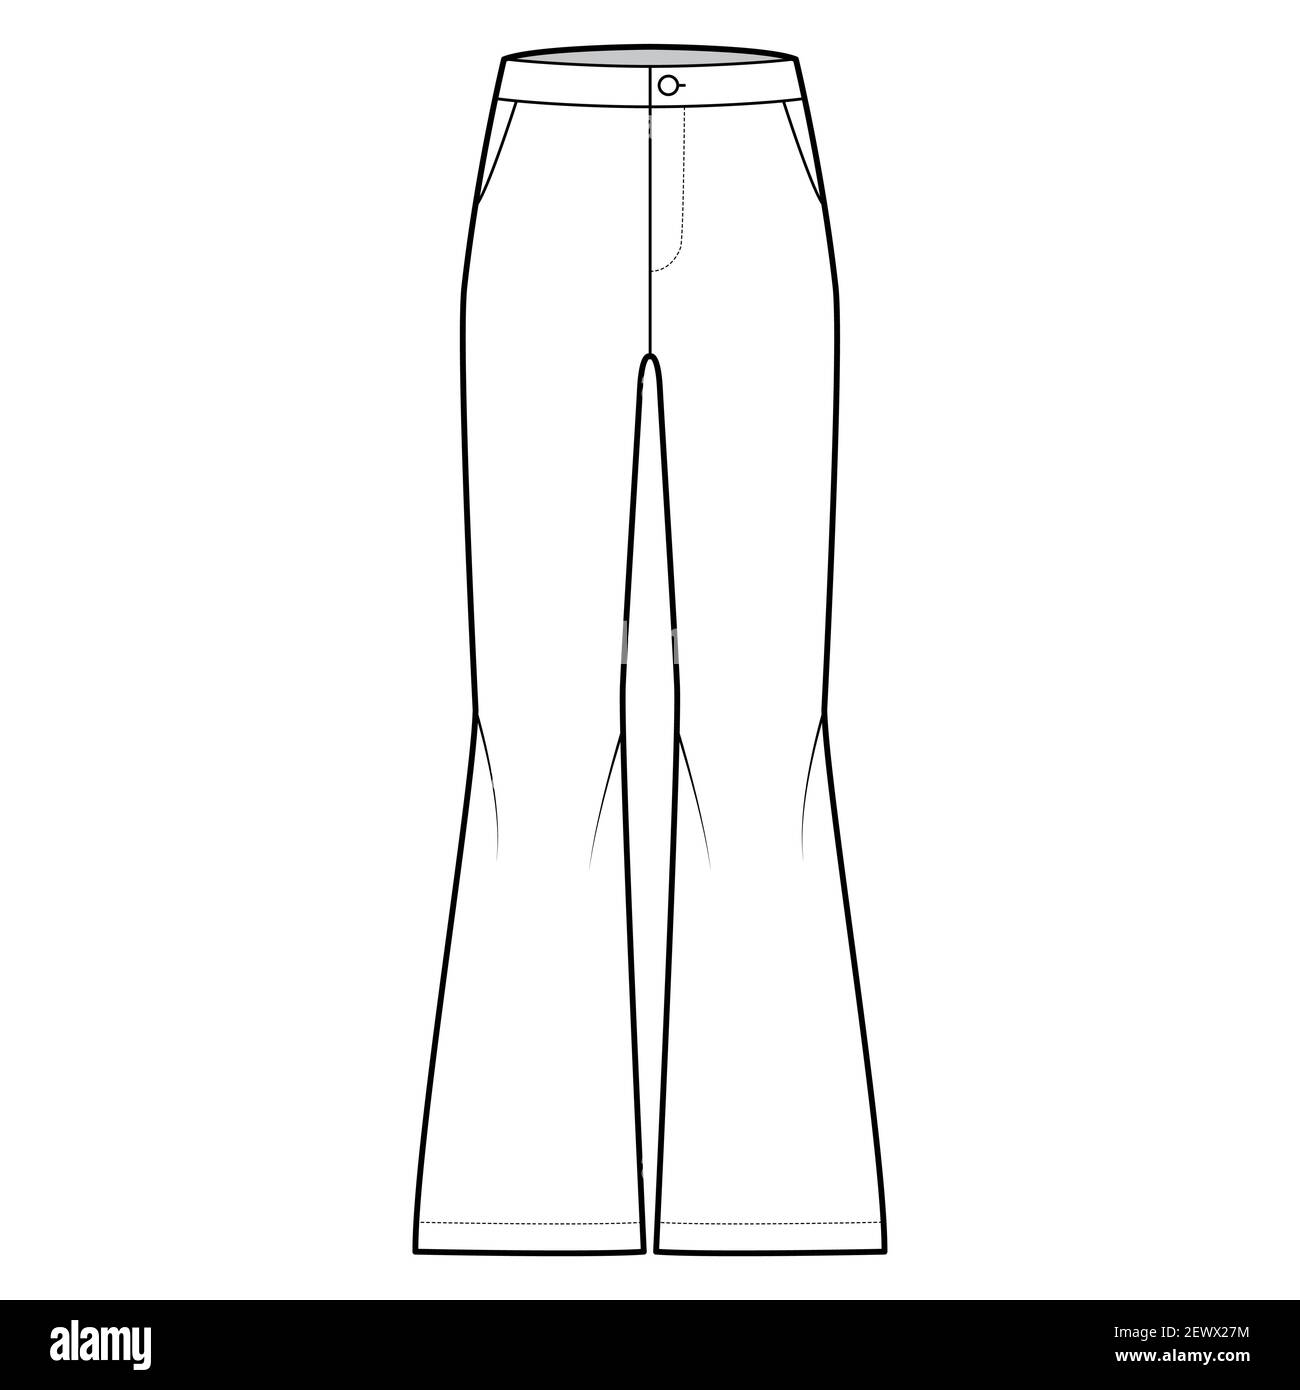 El pantalón de tiro alto más repetido en las calles de Nueva York sienta  bien a cualquier cuerpo | Pantalon tiro alto, Casual outfit, Moda estilo